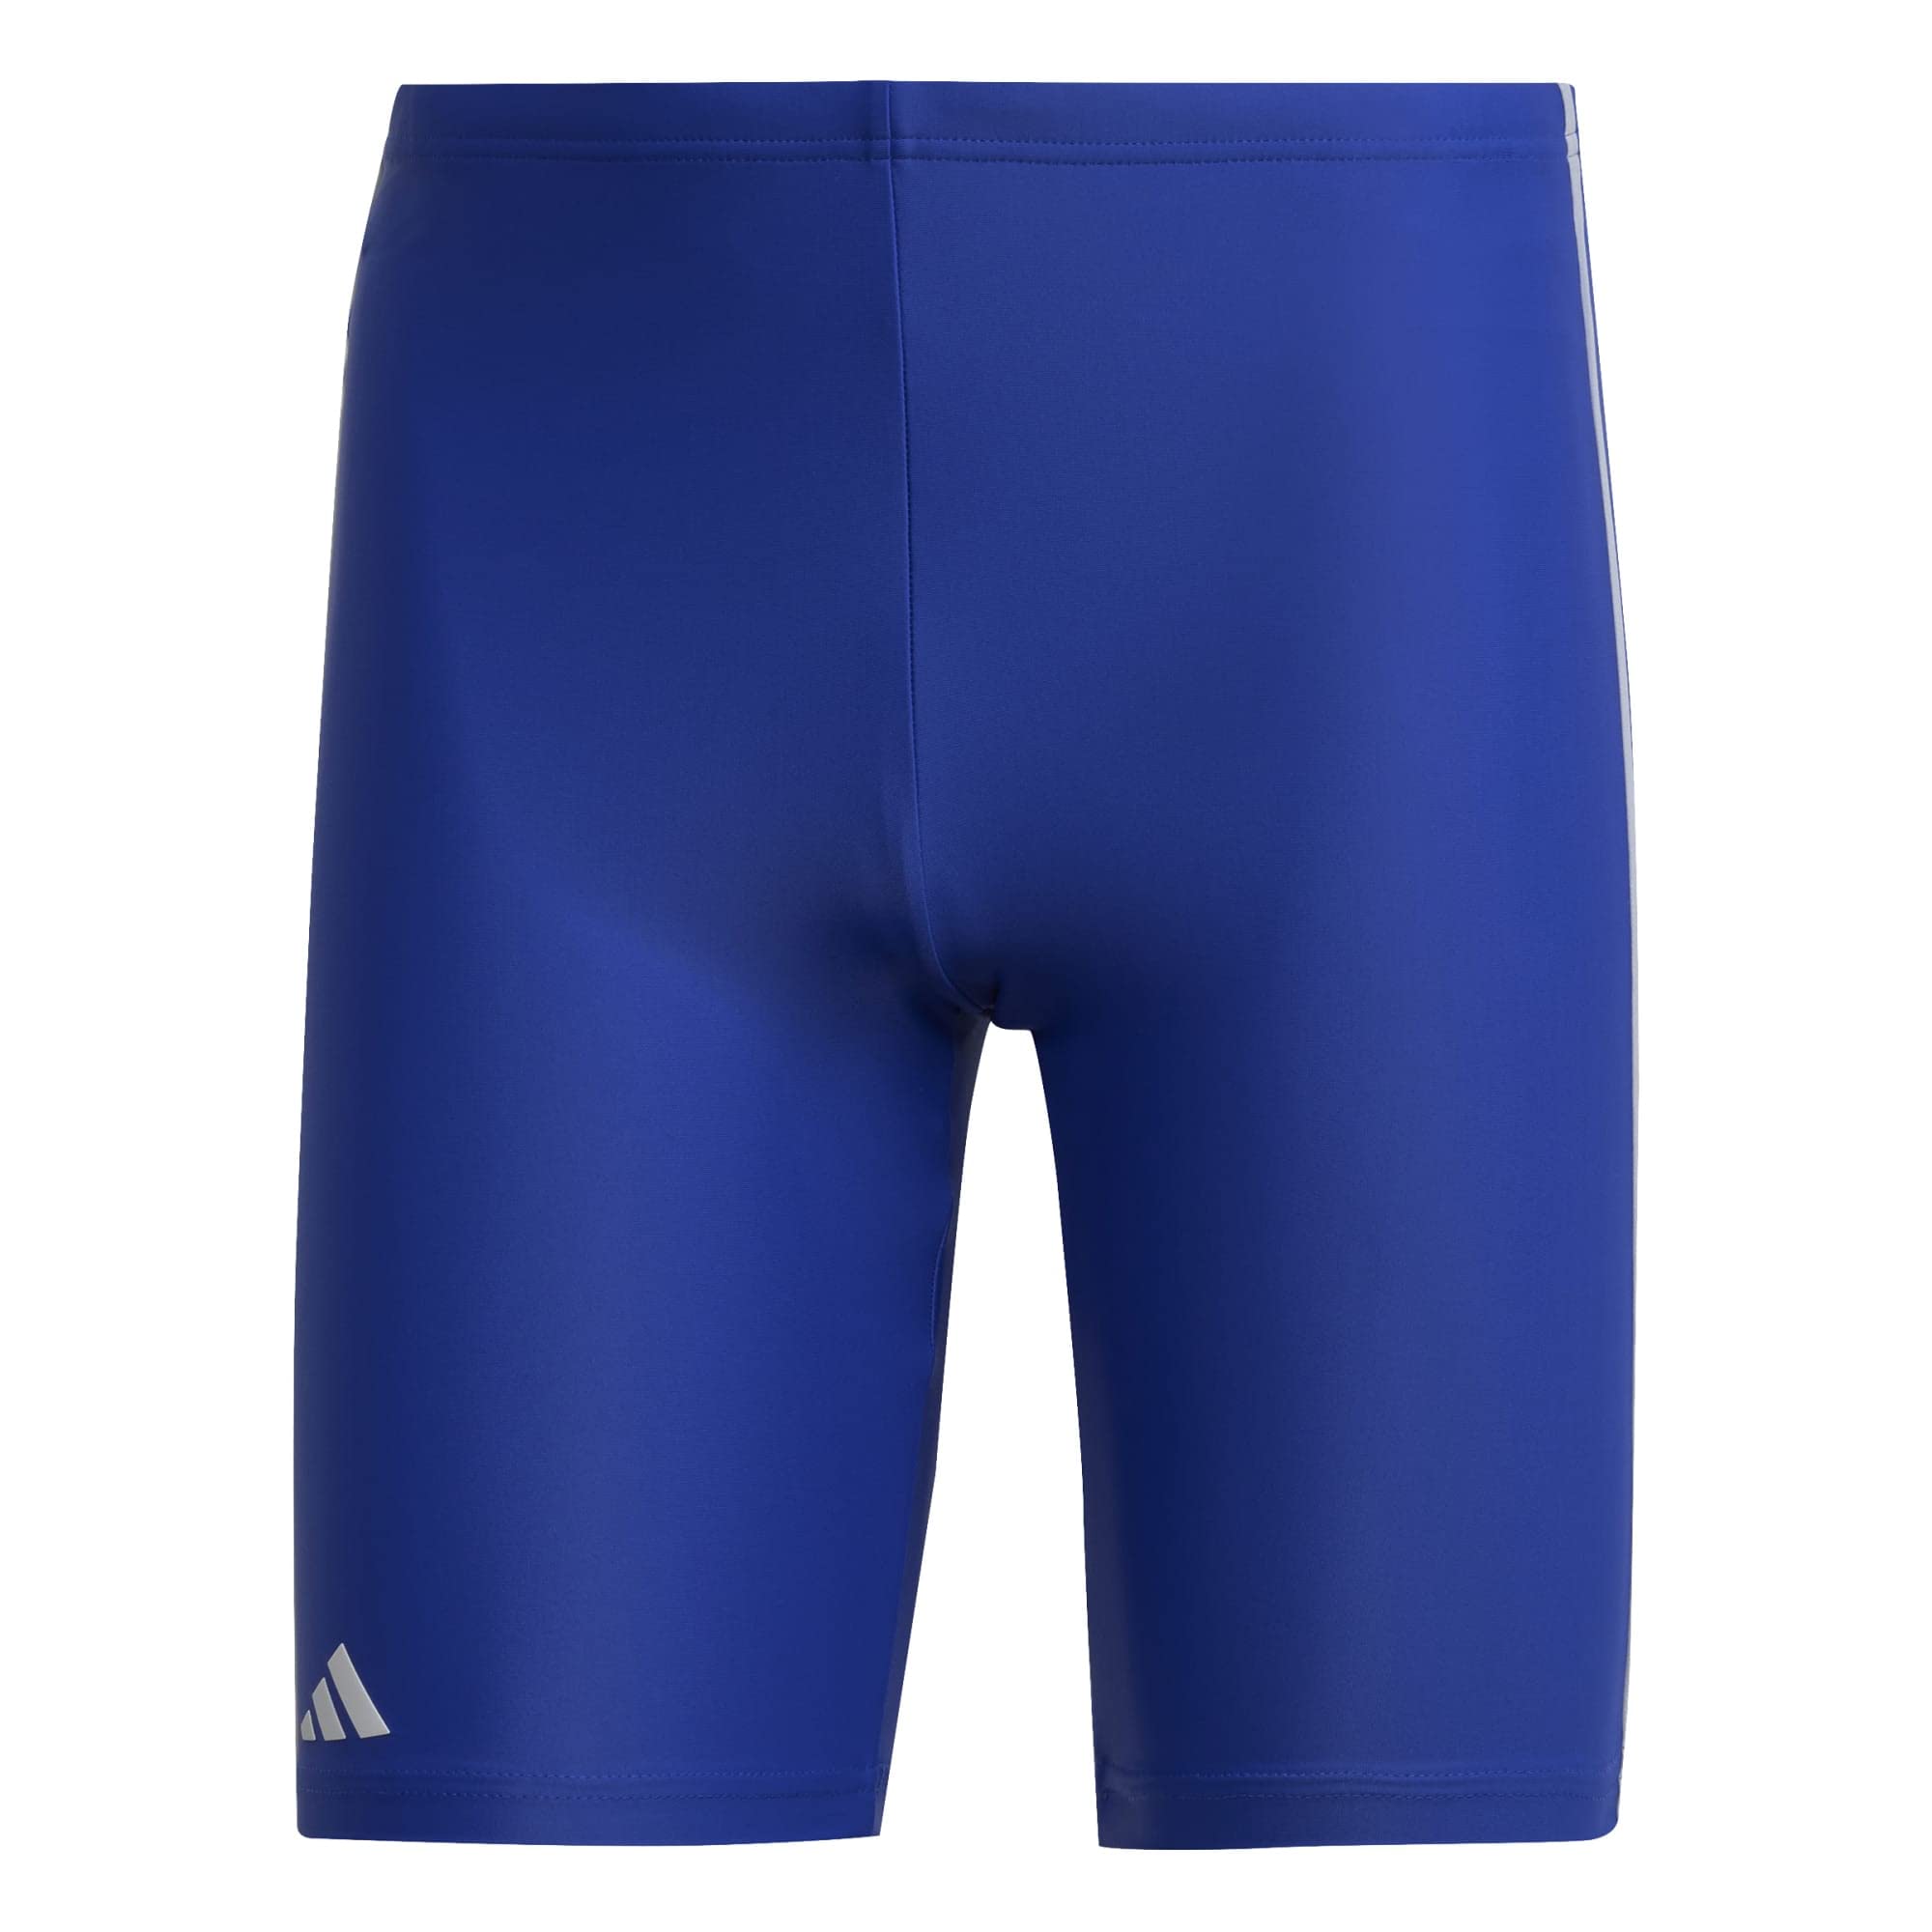 Adidas, Classic 3-Stripes Swim Jammers, Badeanzug, Semi Lucid Blau/Weiß, M, Mann